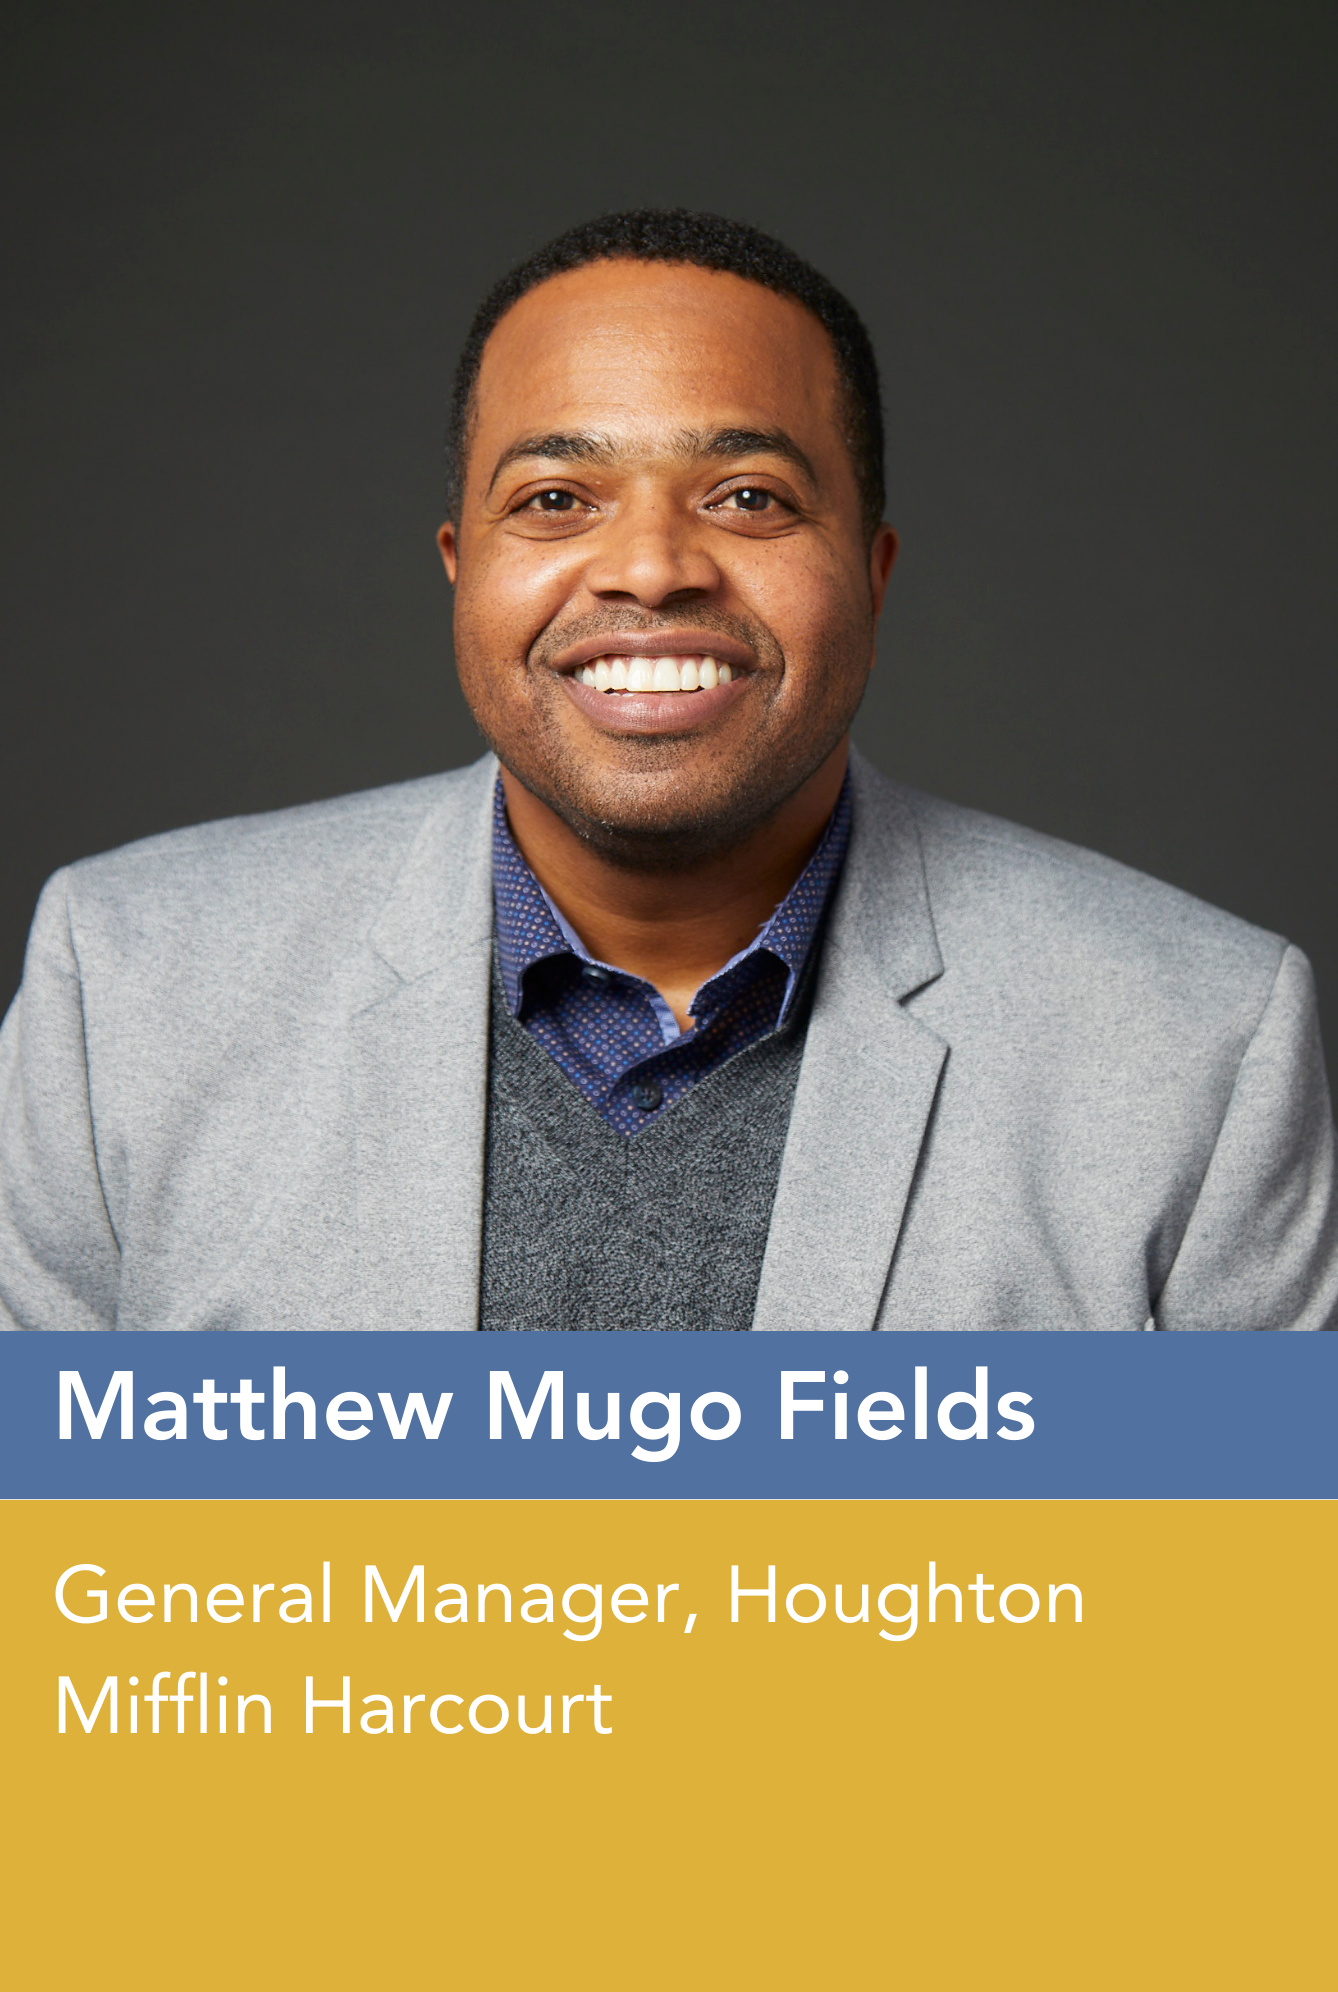 Matthew Mugo Fields